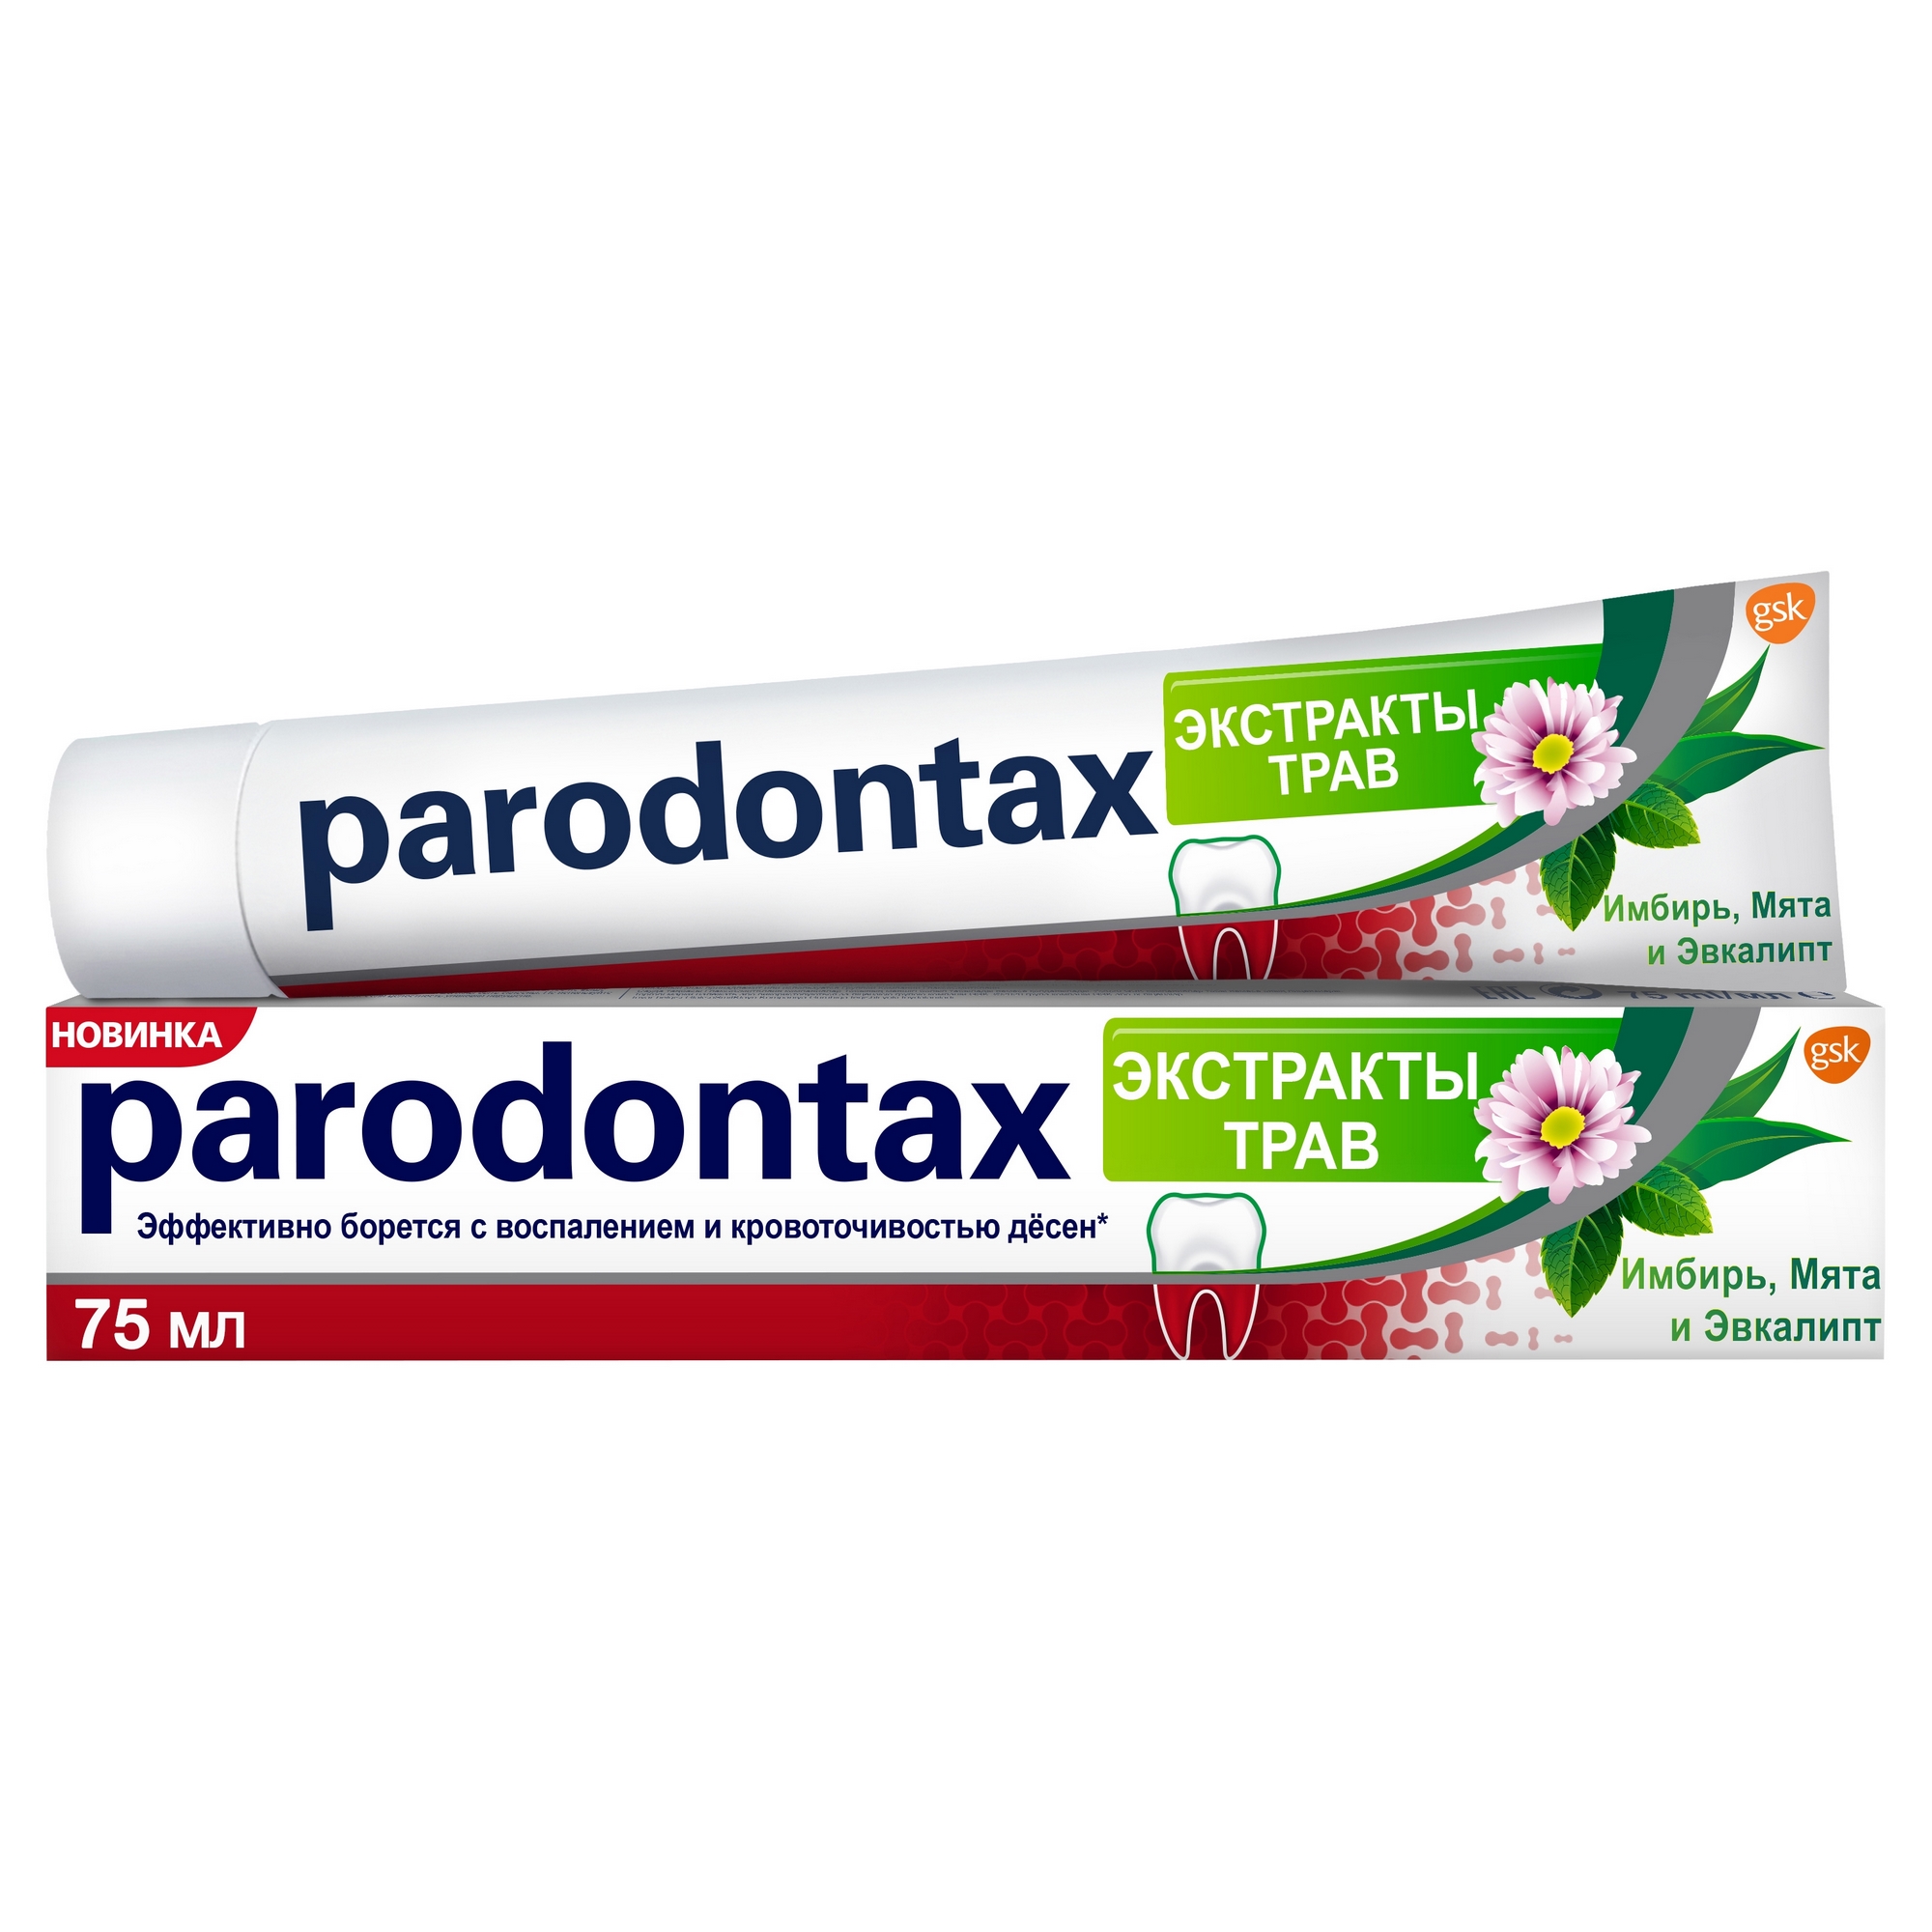 Зубная паста Parodontax Экстракты трав 75 мл зубная паста paradontax экстракты трав 75 мл